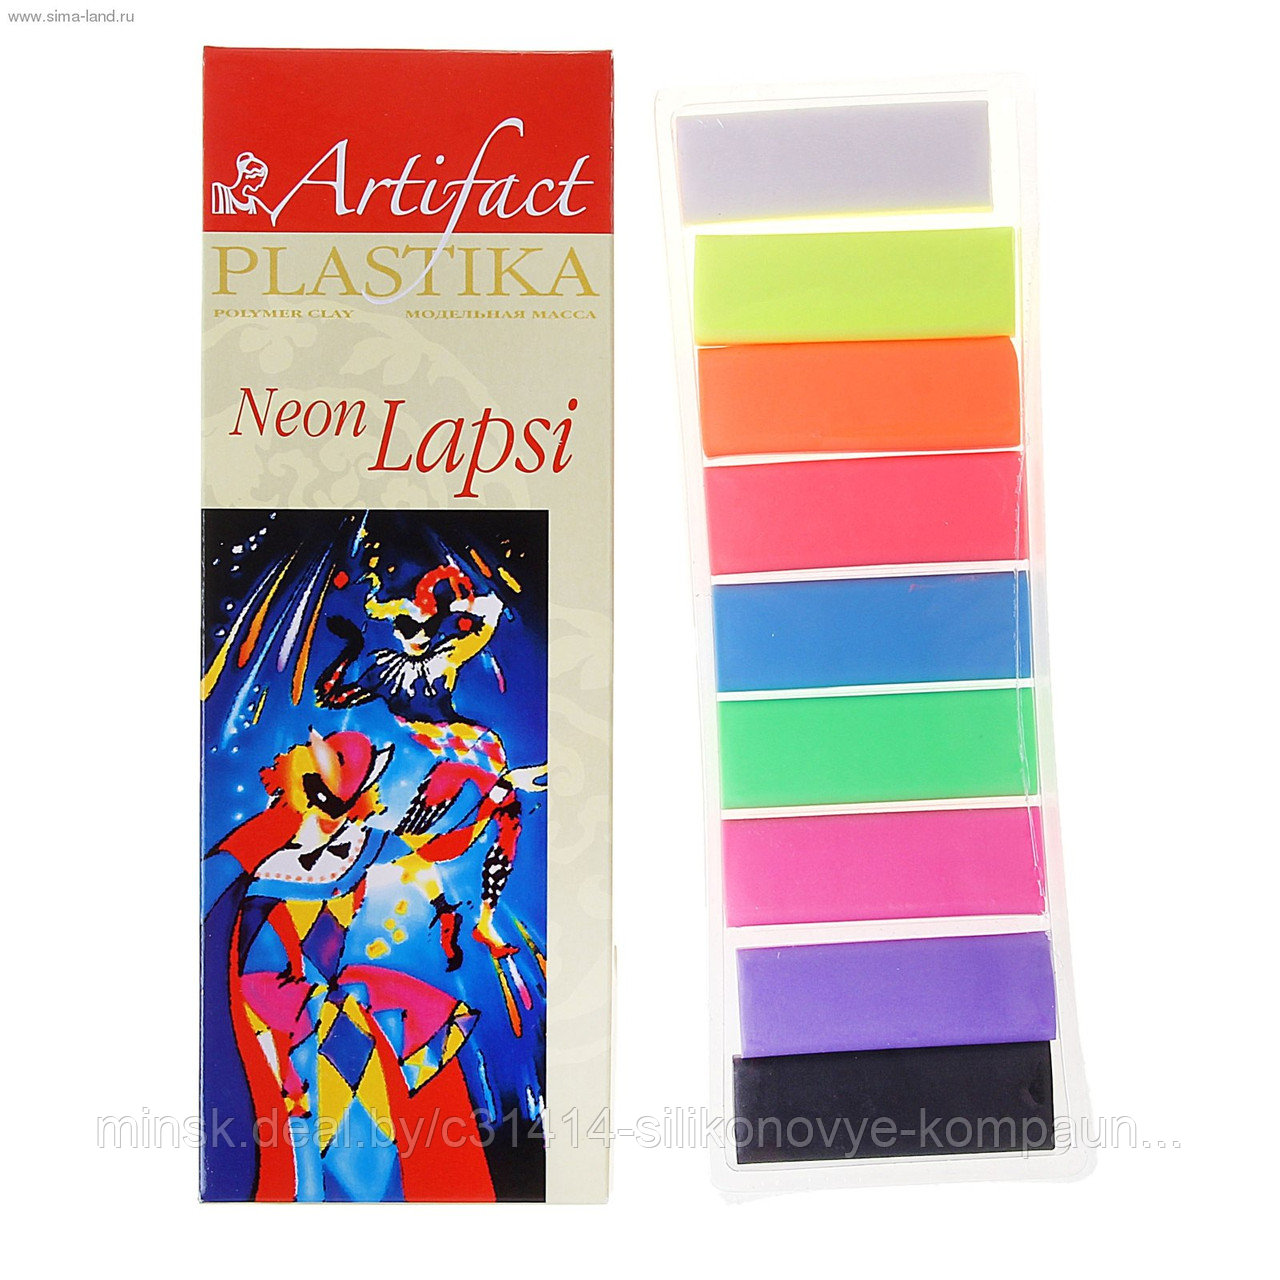 Пластика - полимерная глина набор LAPSI NEON 9 флуоресцентных цветов 180г   Artifact